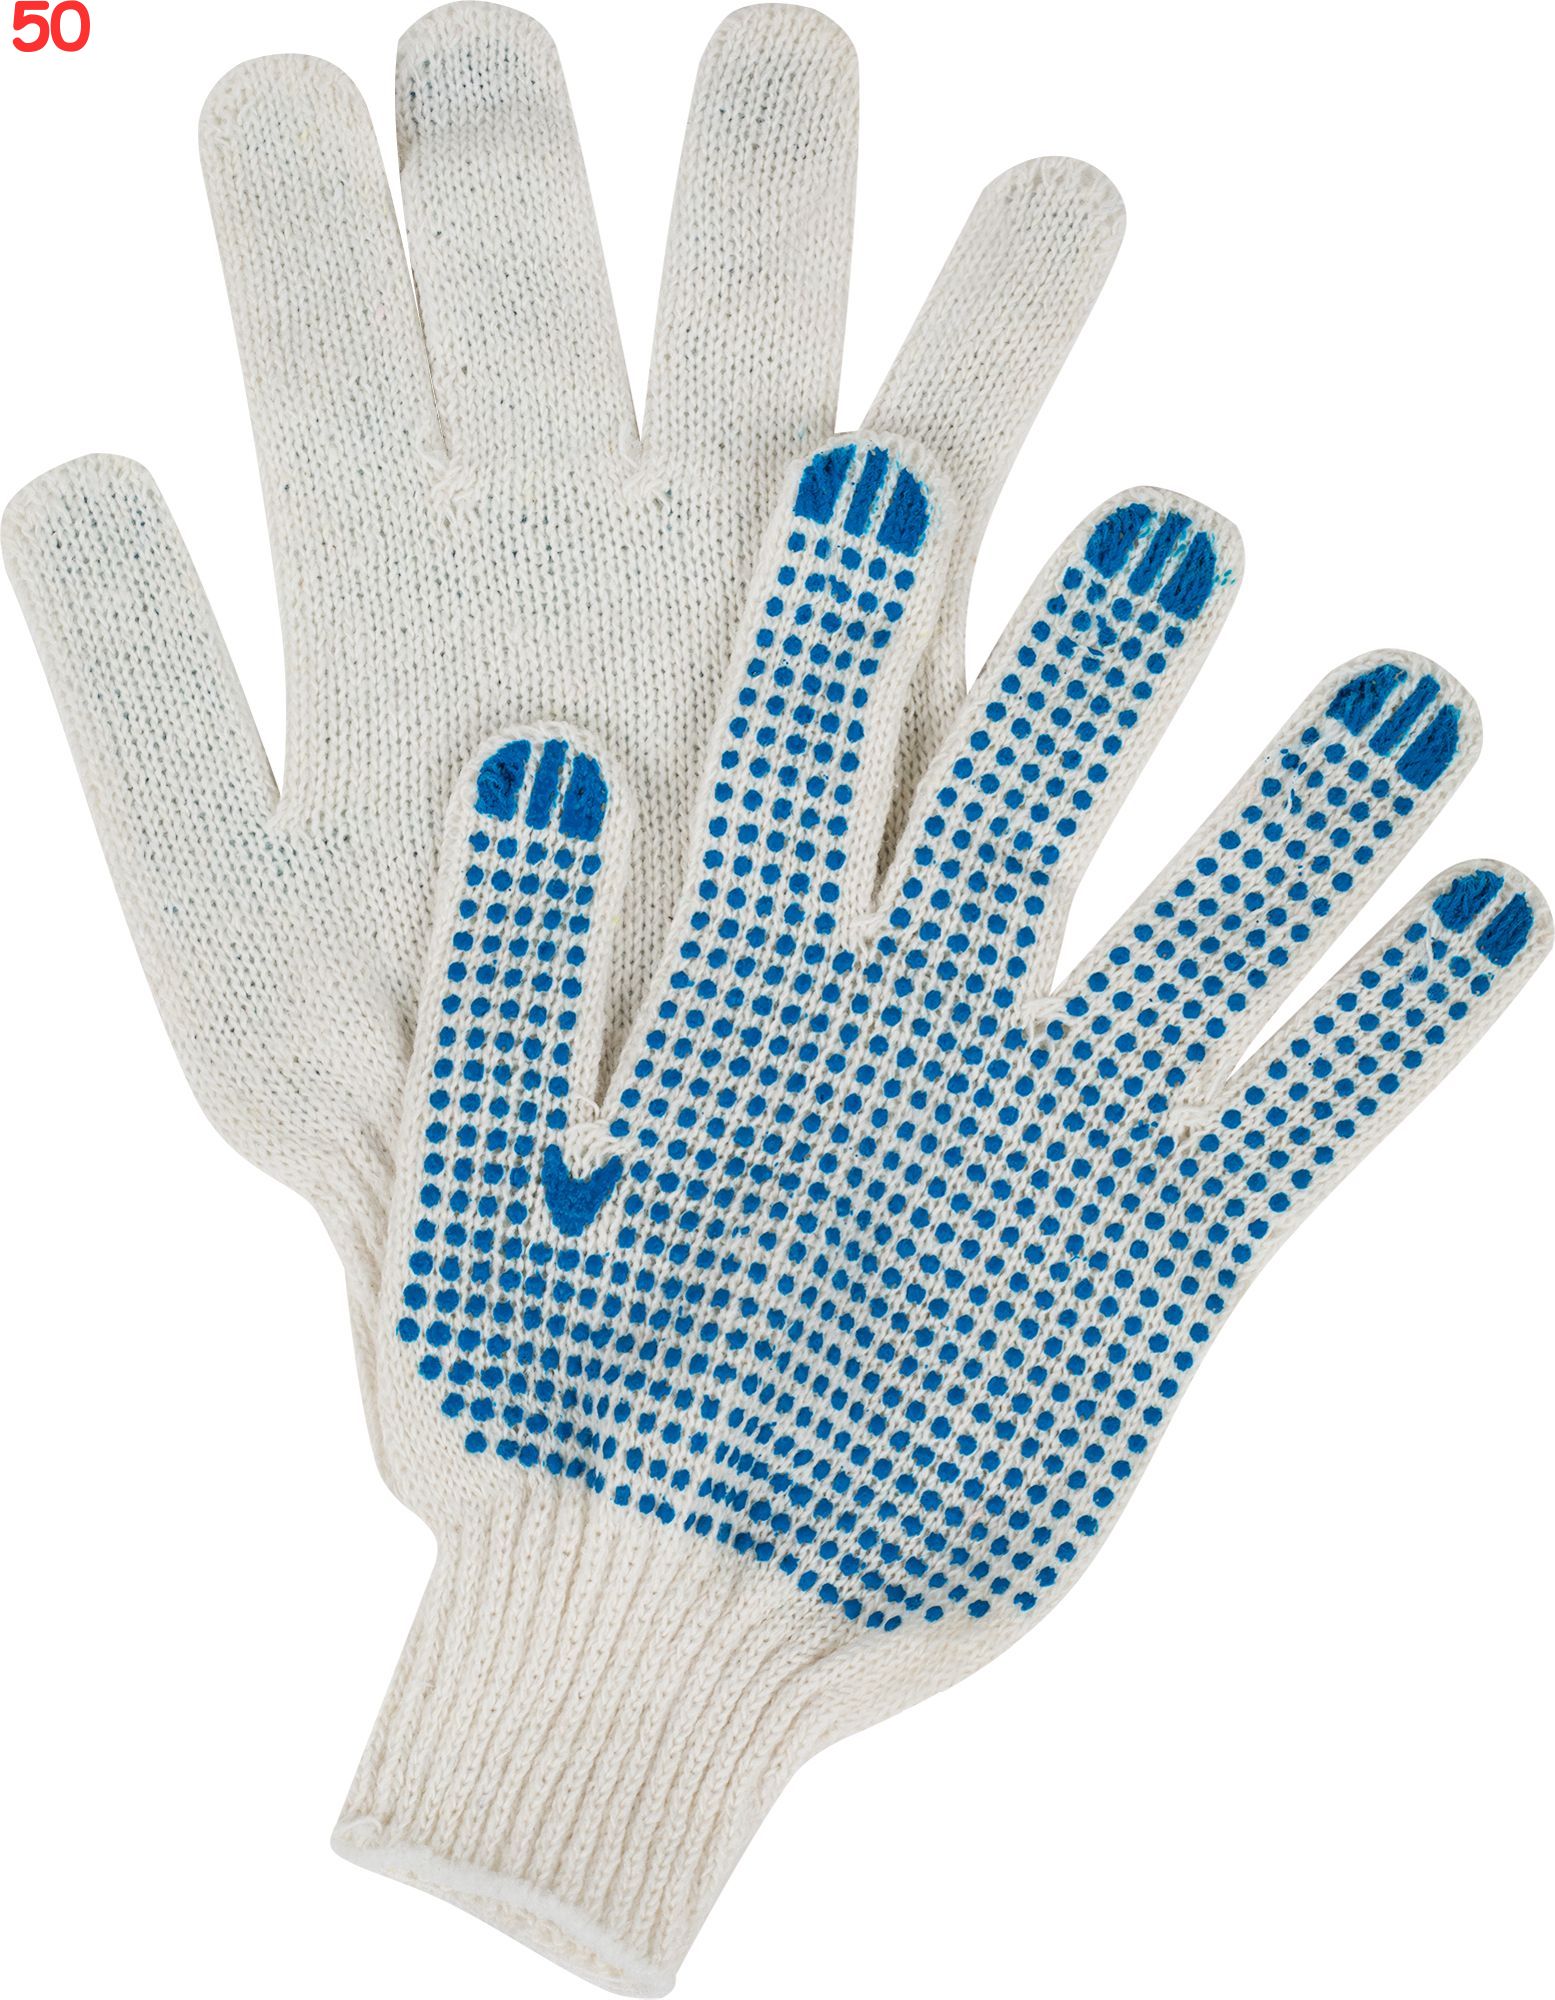 Купить перчатки хб от производителя